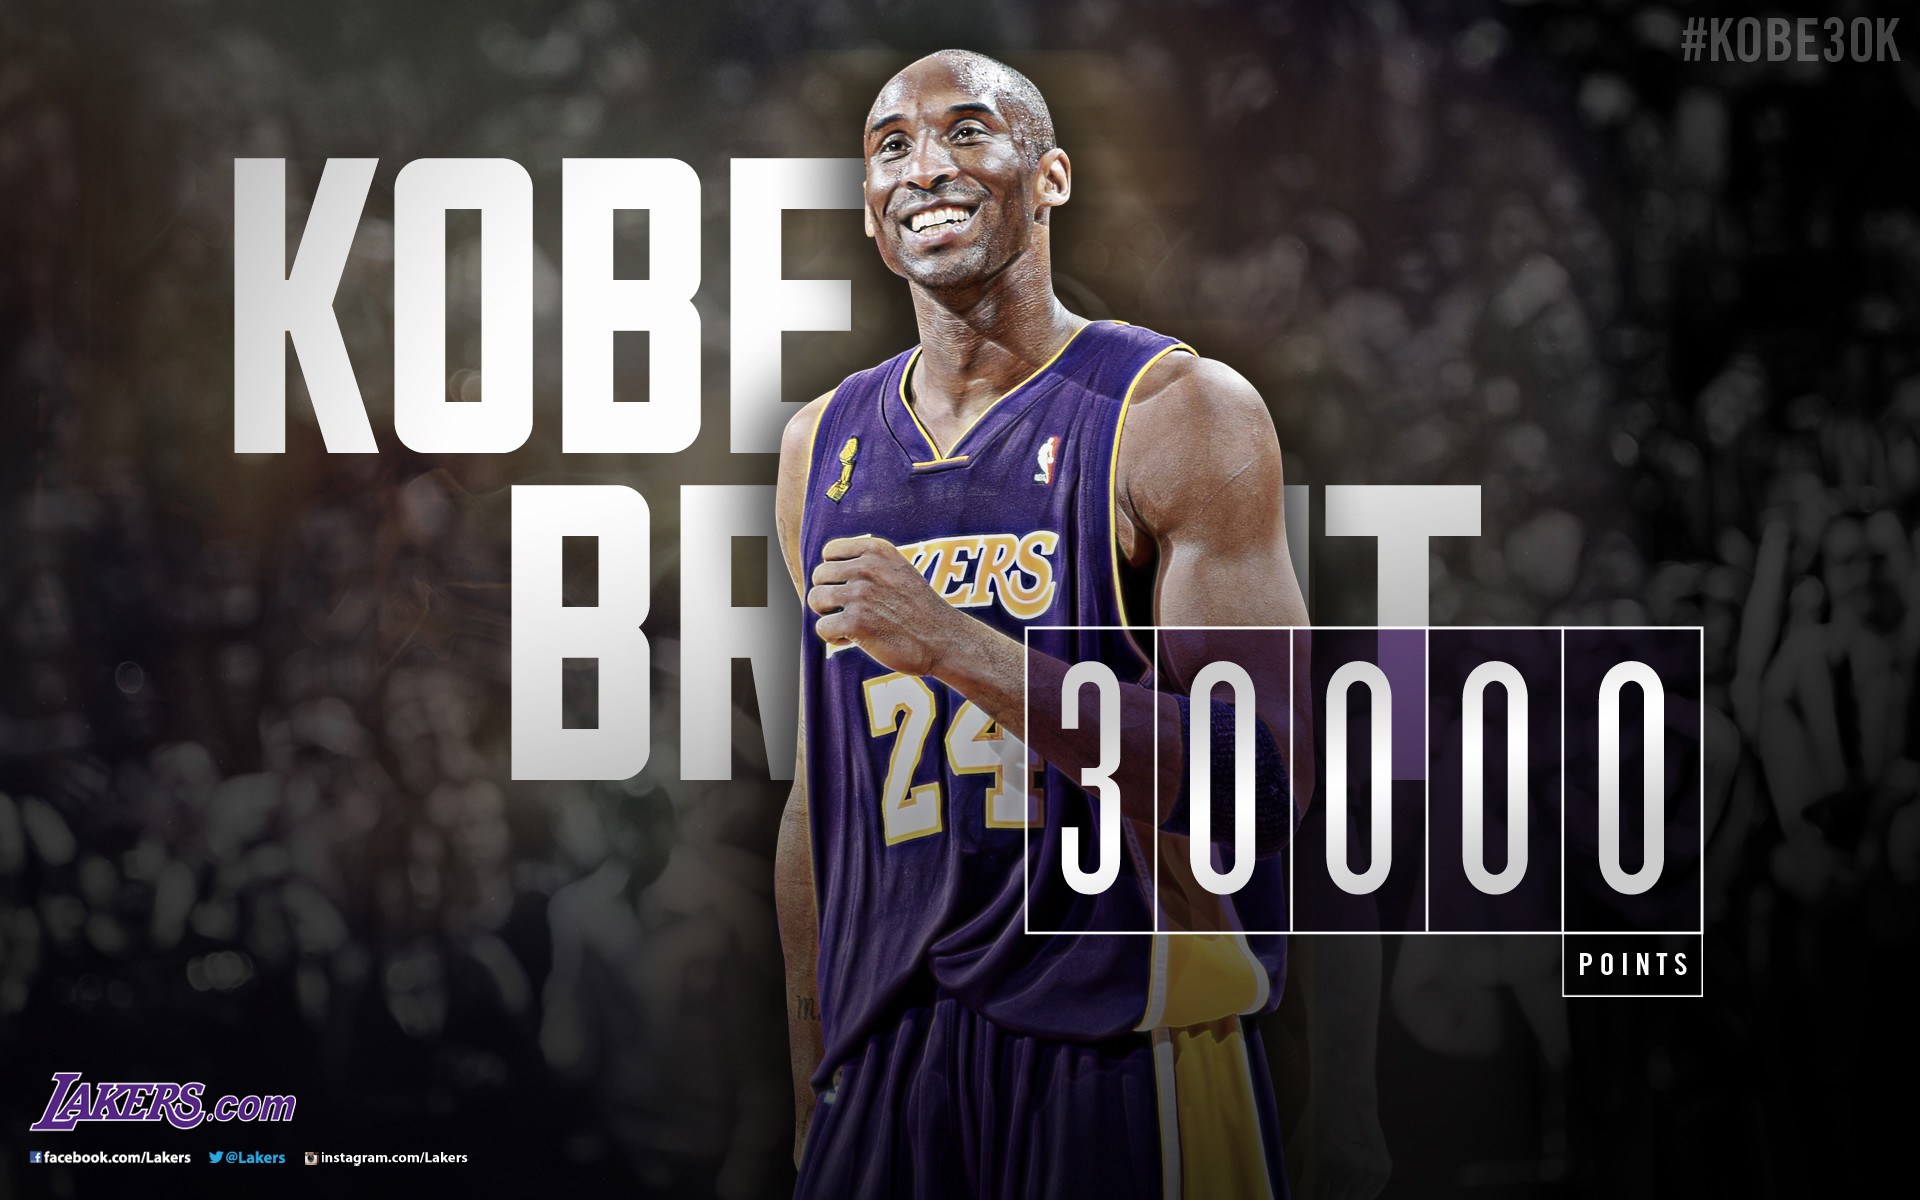 Kobe Bryant 30,000 Points